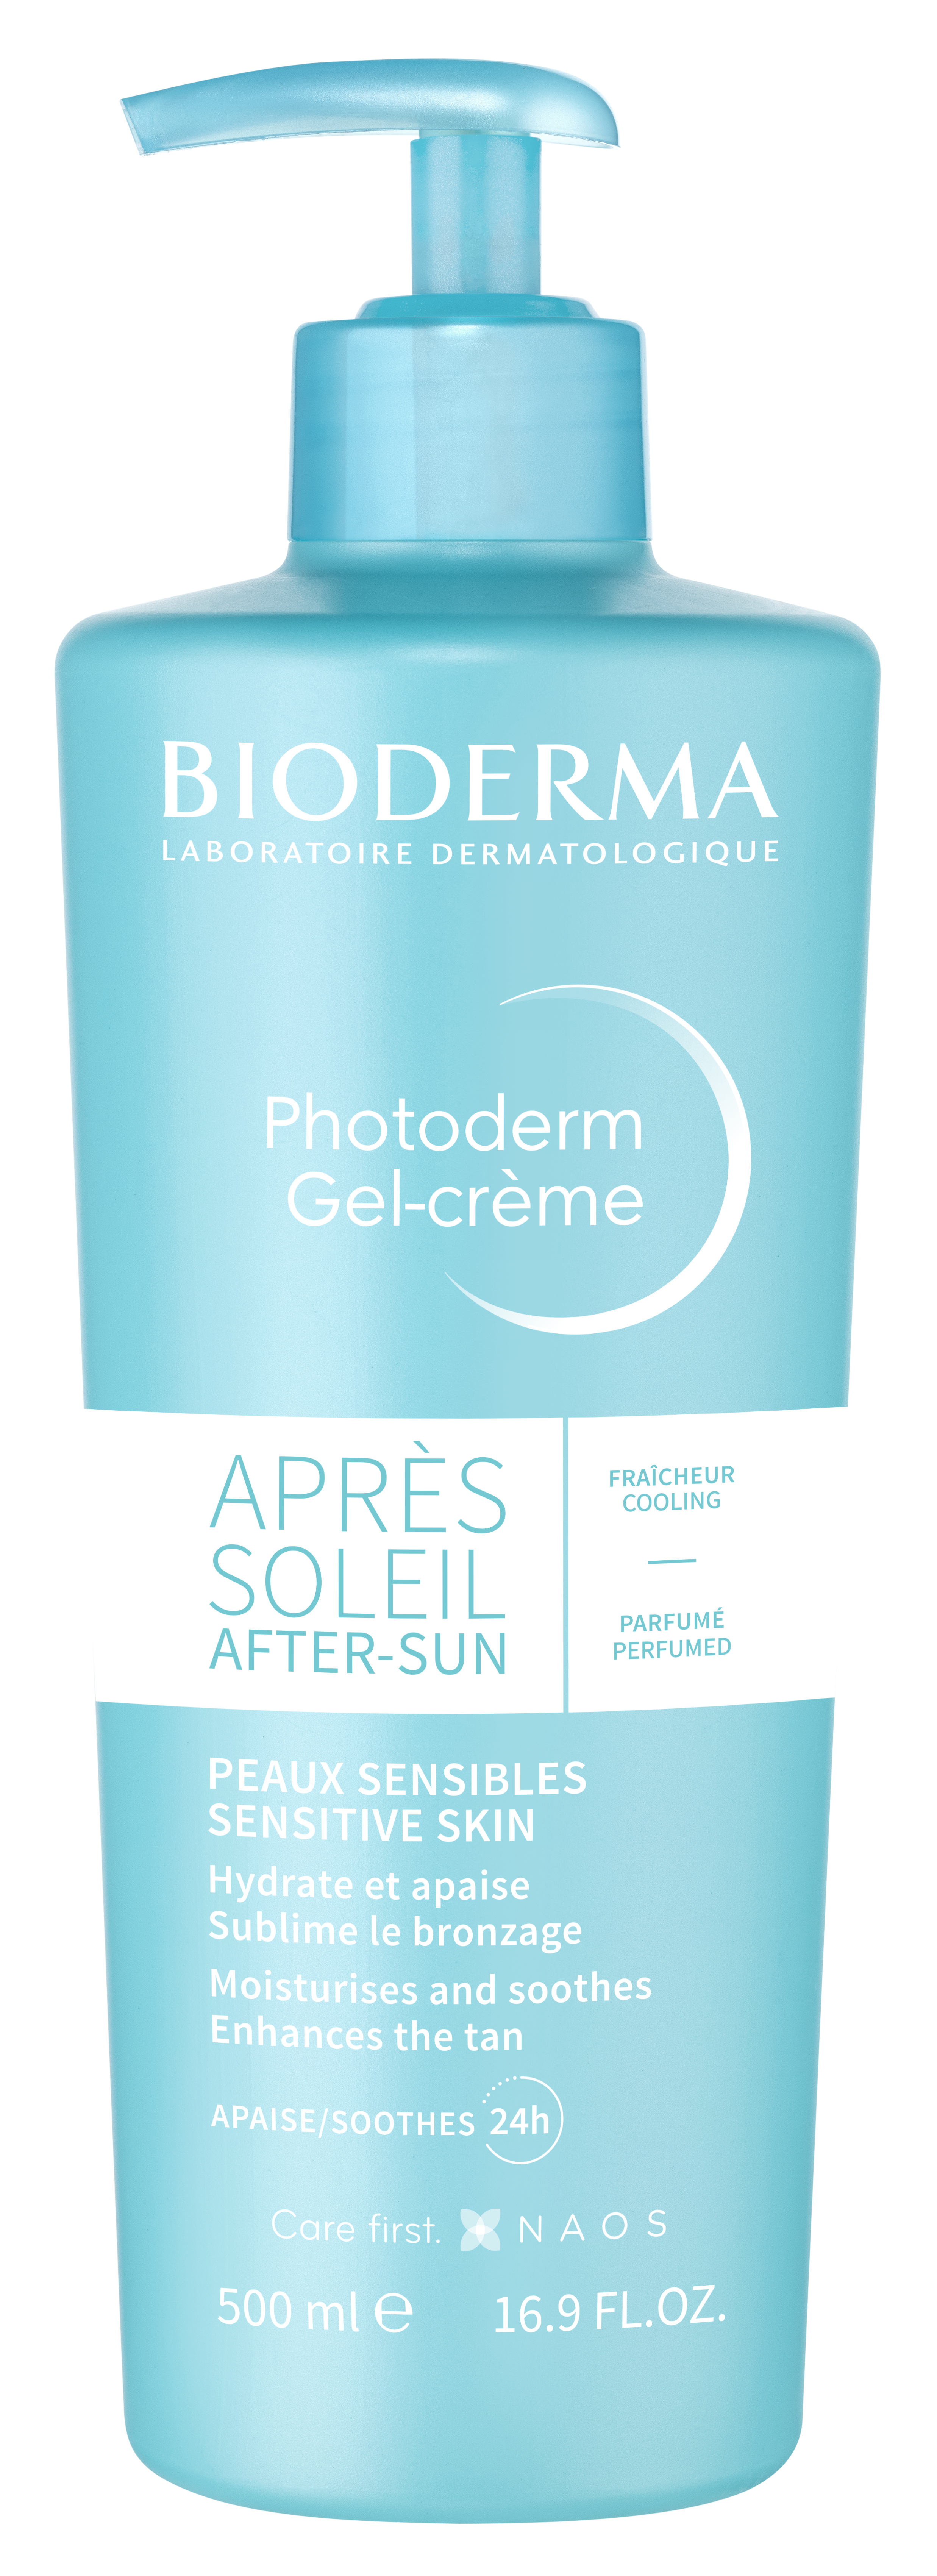 Photoderm-Gel-creme-Apres-soleil-F500ml-28521M-MAD-nov2021